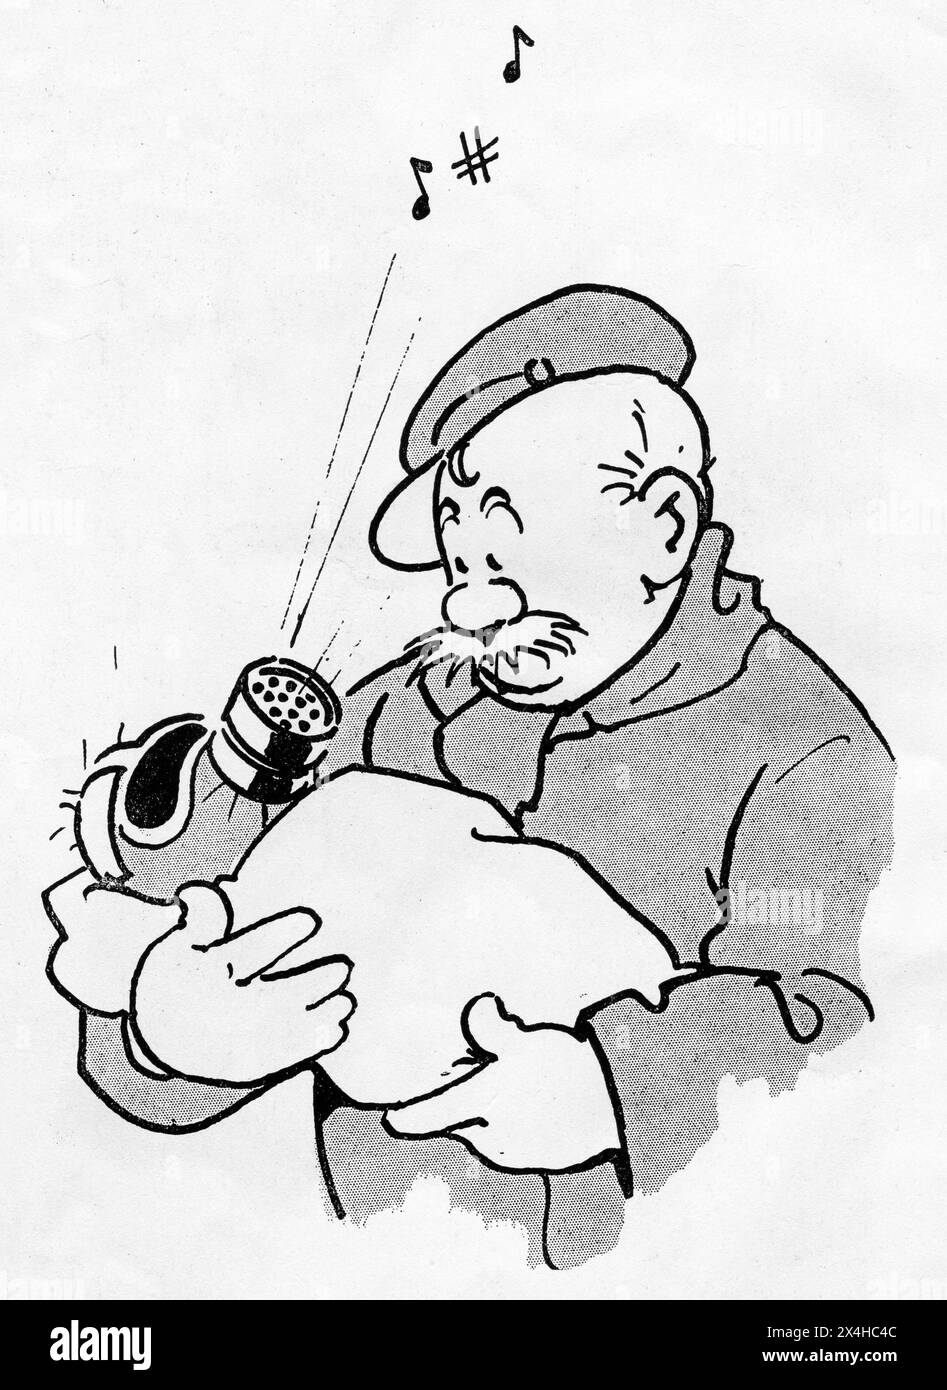 1940er Jahre - ein amüsanter Zeichentrick aus dem Zweiten Weltkrieg, der die populäre fiktive britische Soldatenfigur Old Bill darstellt, die von dem Karikaturisten Bruce Bairnsfather geschaffen wurde. Dieser Zeichentrick zeigt den alten Bill, der ein Baby hält, das eine Gasmaske trägt. Stockfoto